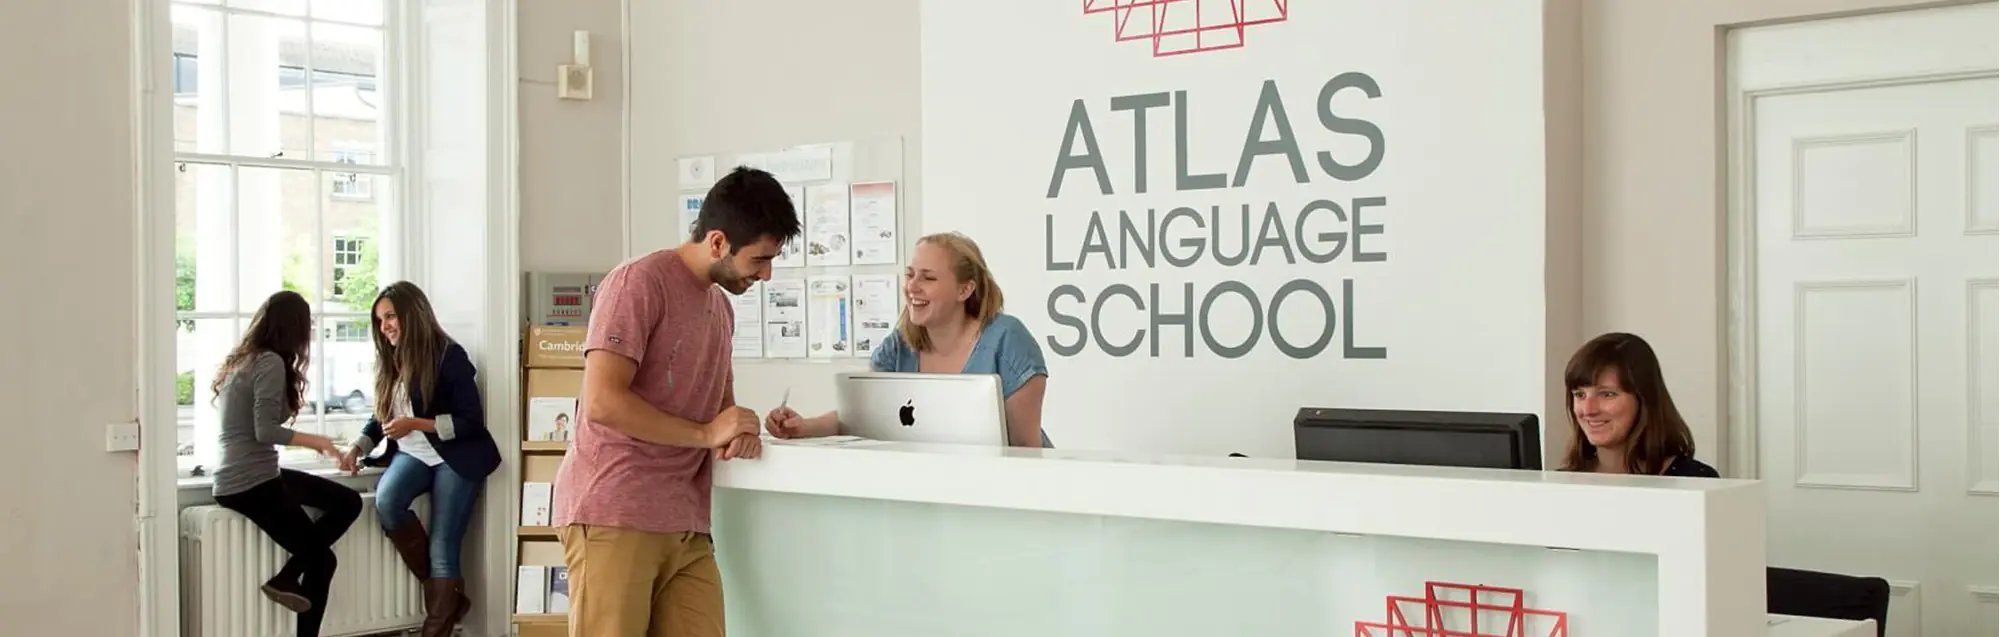 Le sistemazioni offerte da Atlas Language School